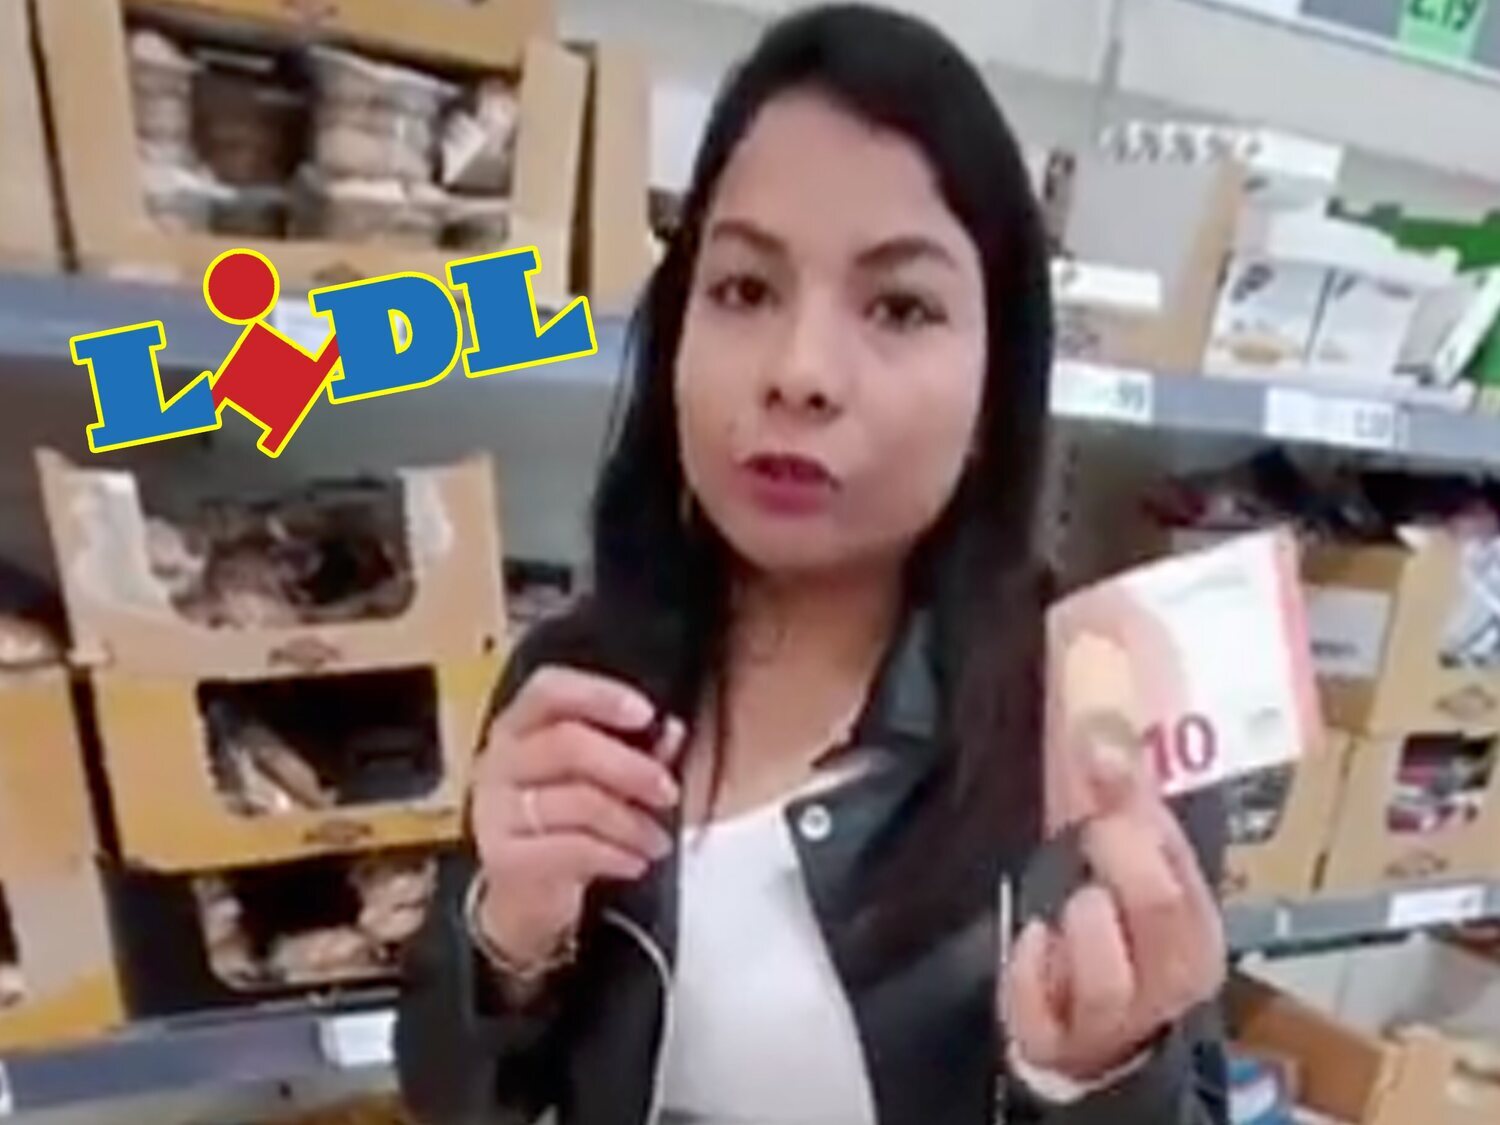 Una mujer se hace viral mostrando todo lo que puede comprar en un supermercado Lidl de Alemania con 12 euros